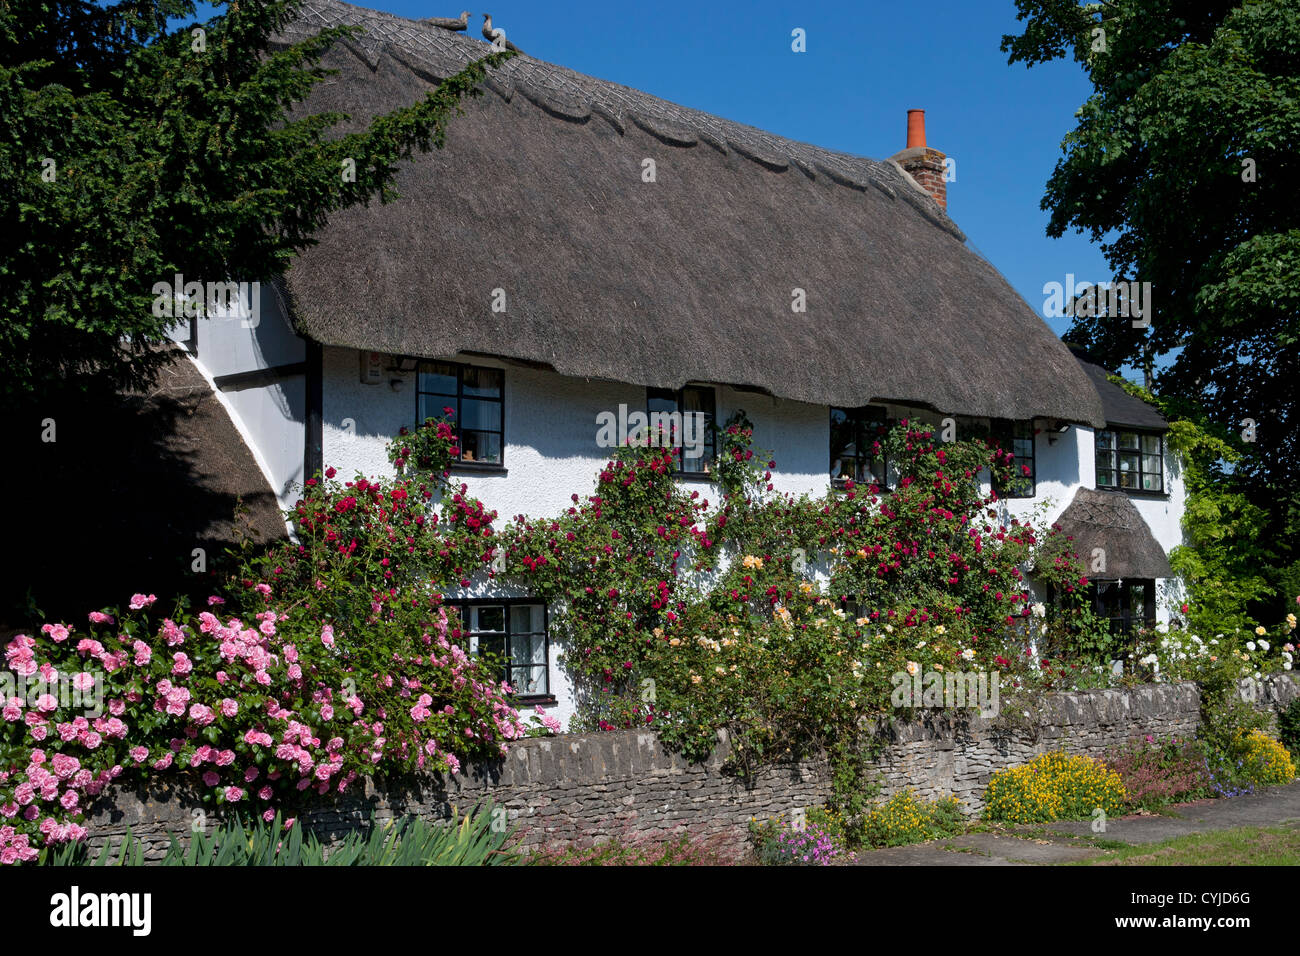 Ziemlich typisch englischen Strohdach bedeckt im Sommer Rosen, Oxford, England Stockfoto